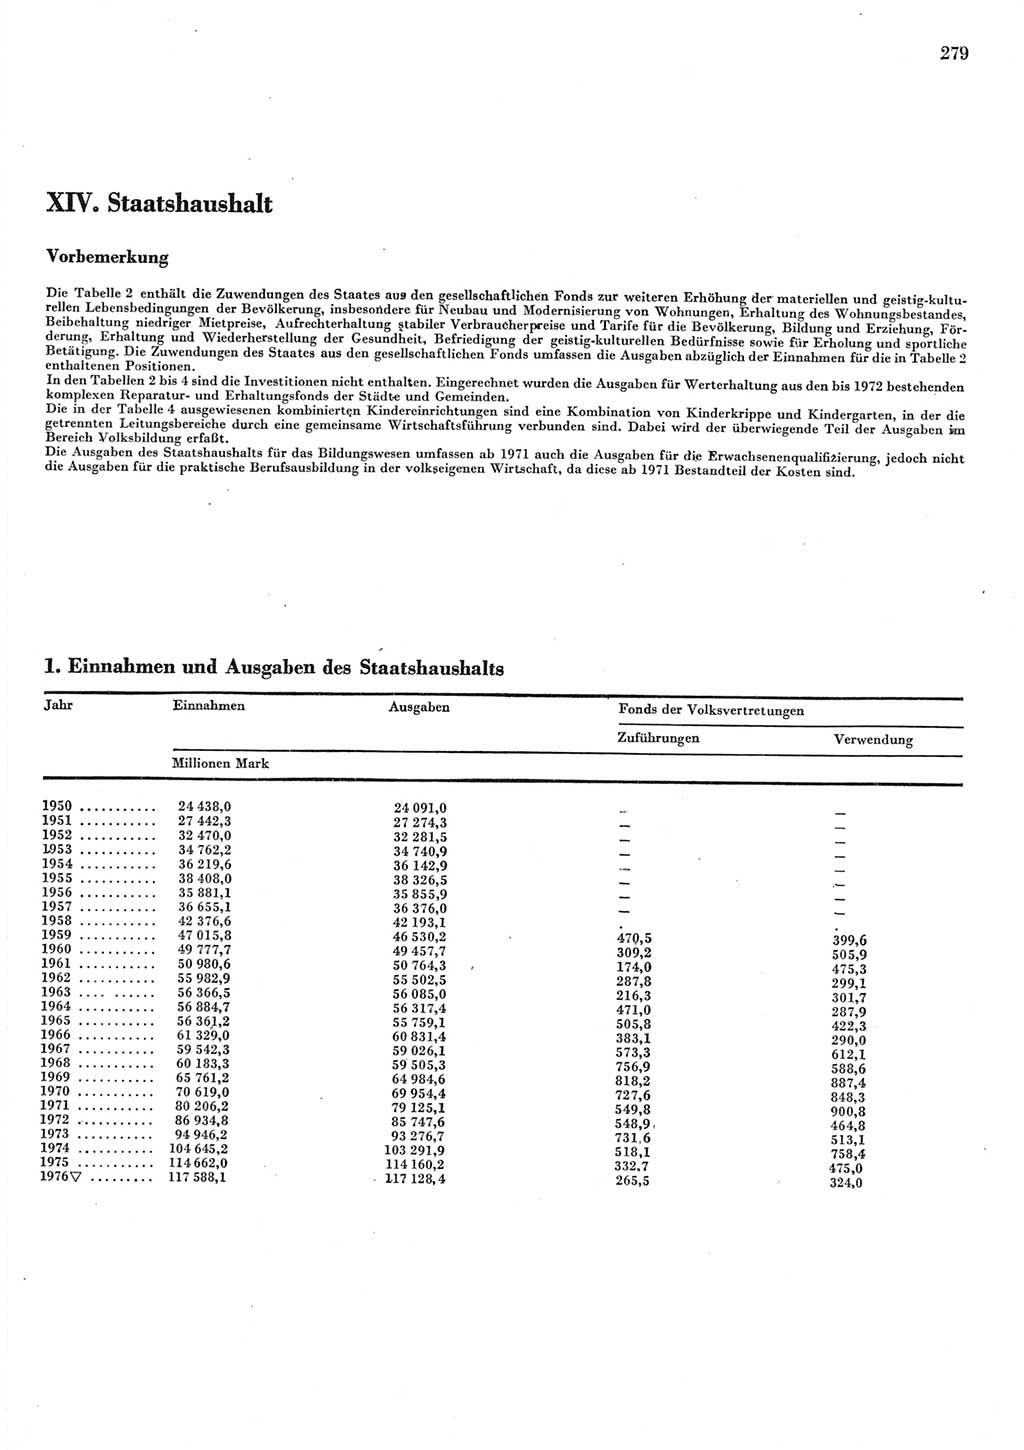 Statistisches Jahrbuch der Deutschen Demokratischen Republik (DDR) 1977, Seite 279 (Stat. Jb. DDR 1977, S. 279)